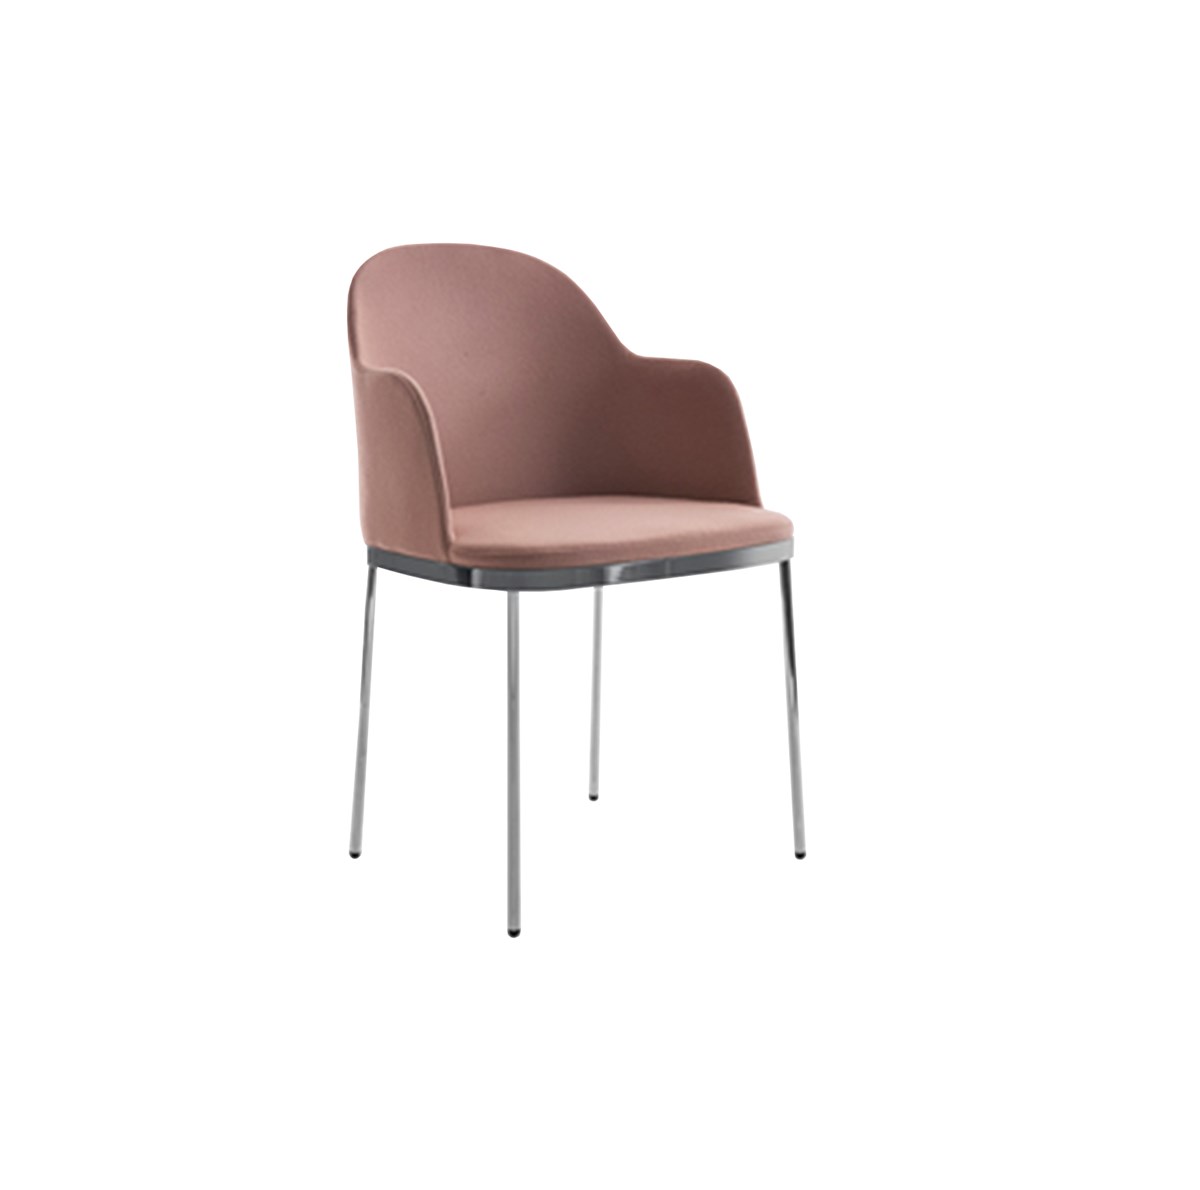 Moroso-Johannes-Torpe-Precious-Chair-Matisse-2